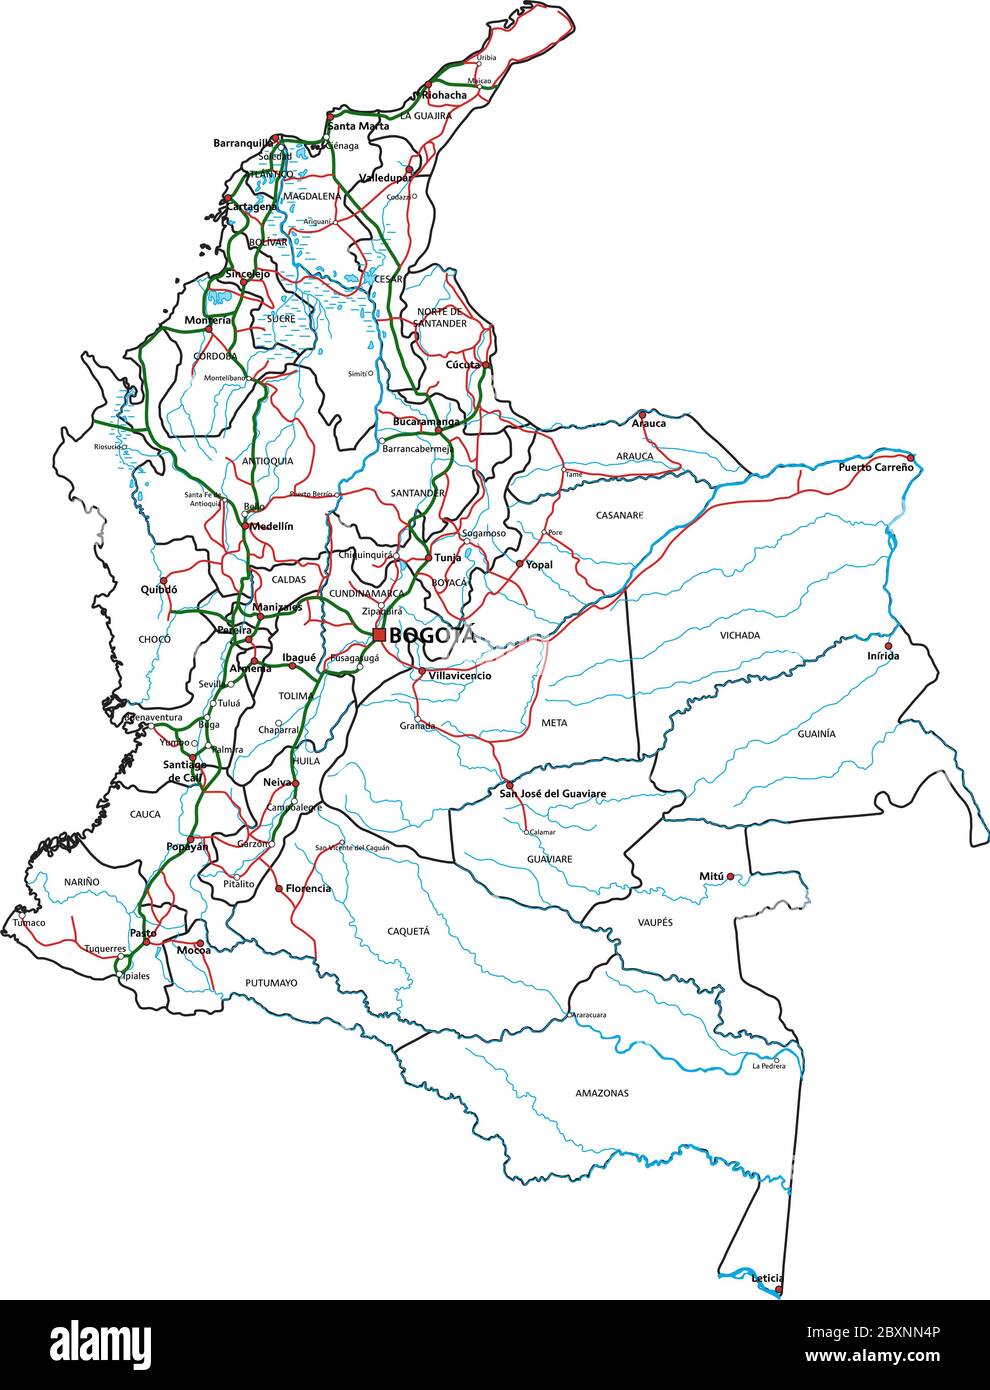 Carte routière et routière de Colombie. Illustration vectorielle. Illustration de Vecteur